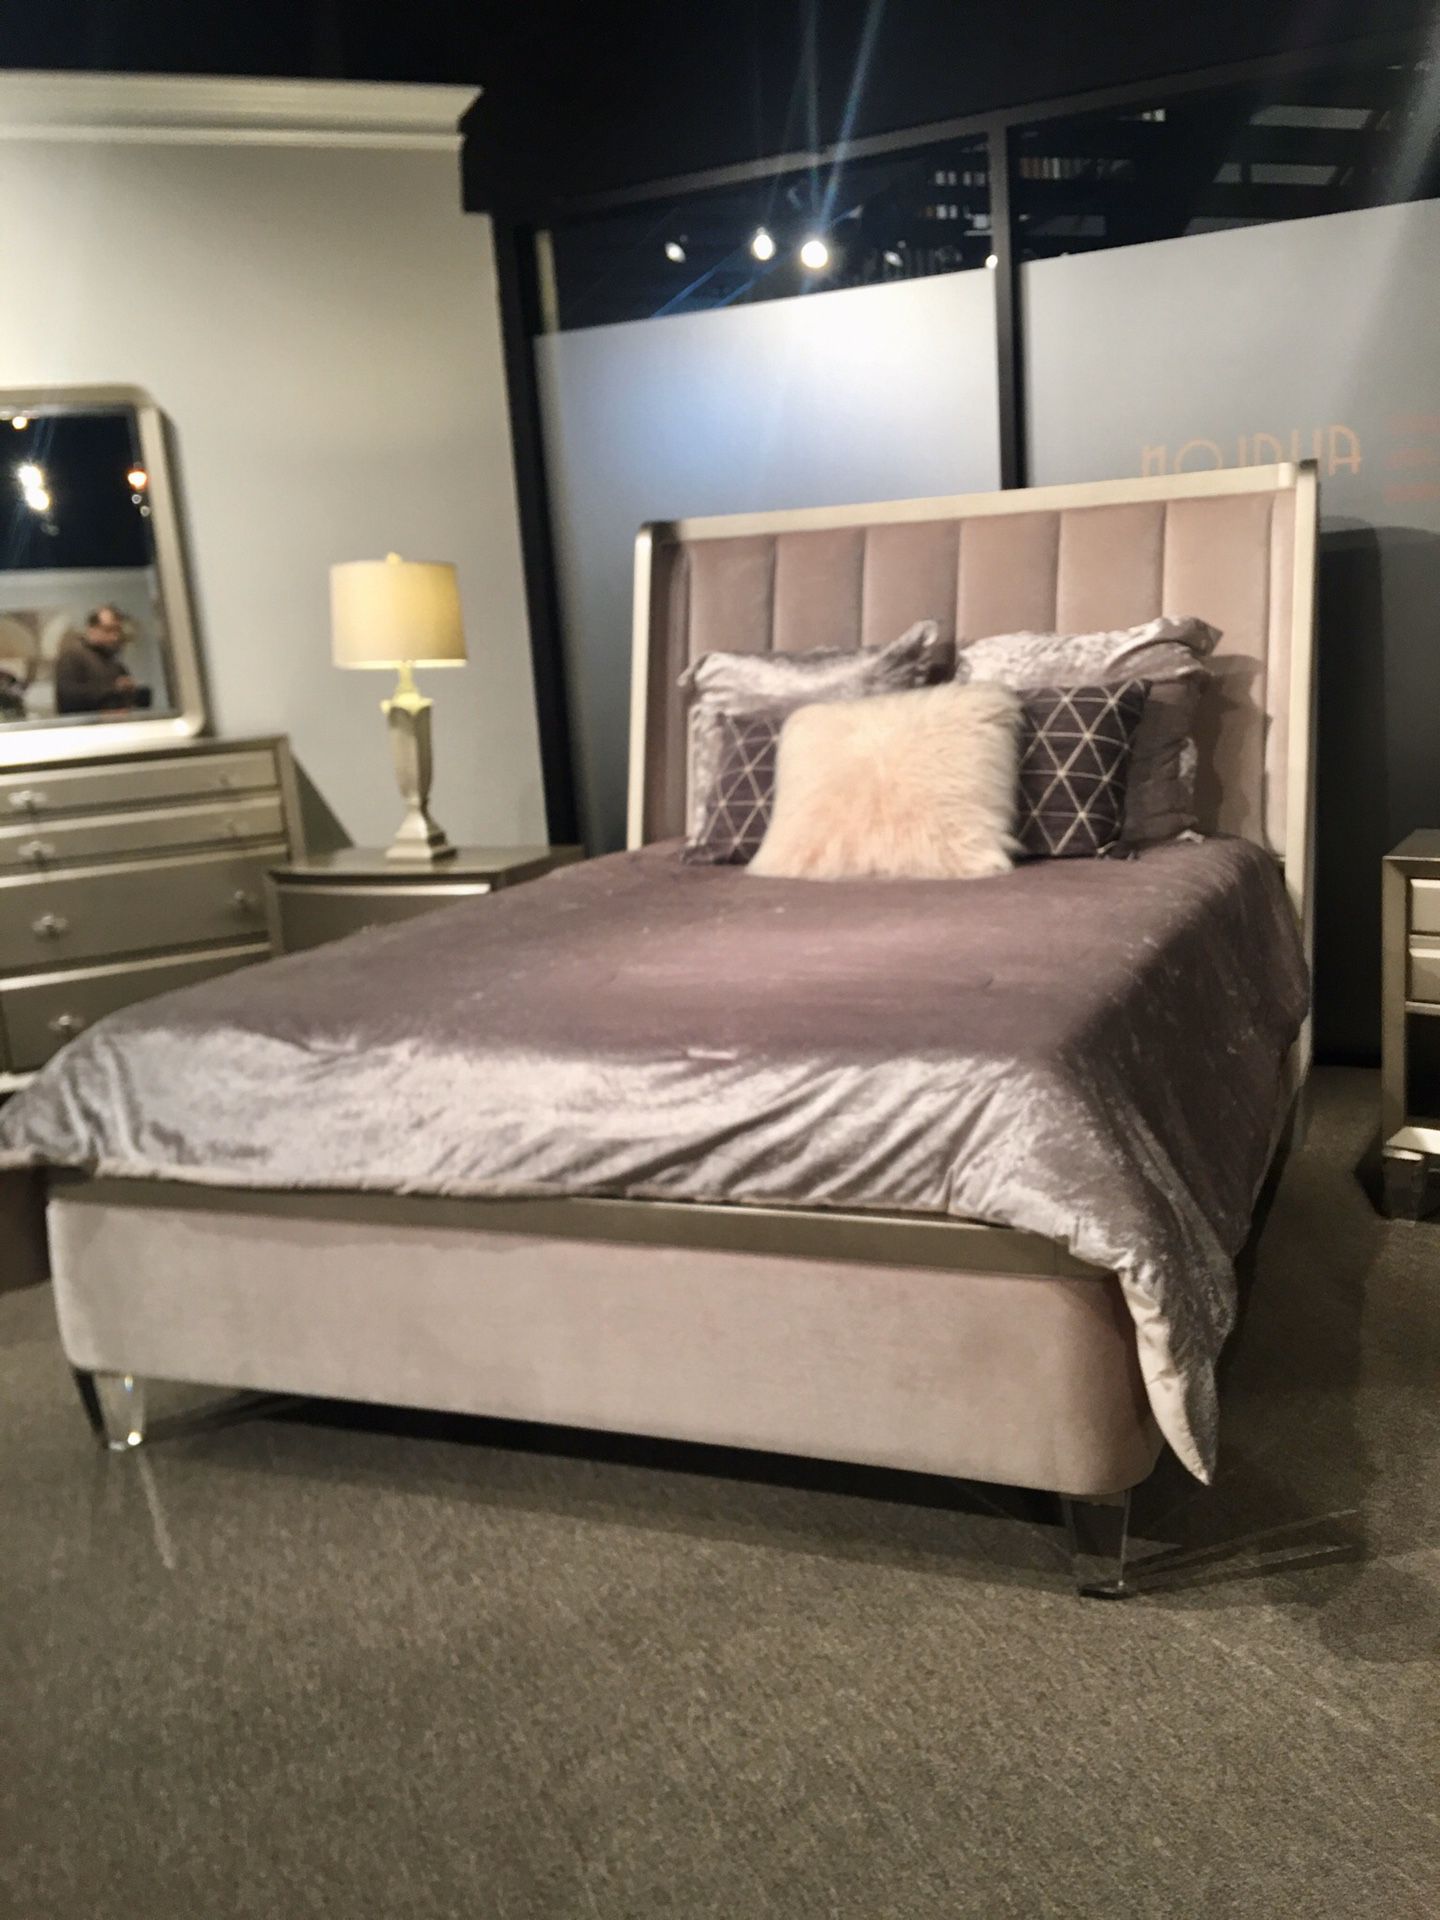 New Queen size bedroom set showroom floor model, Avalon furniture